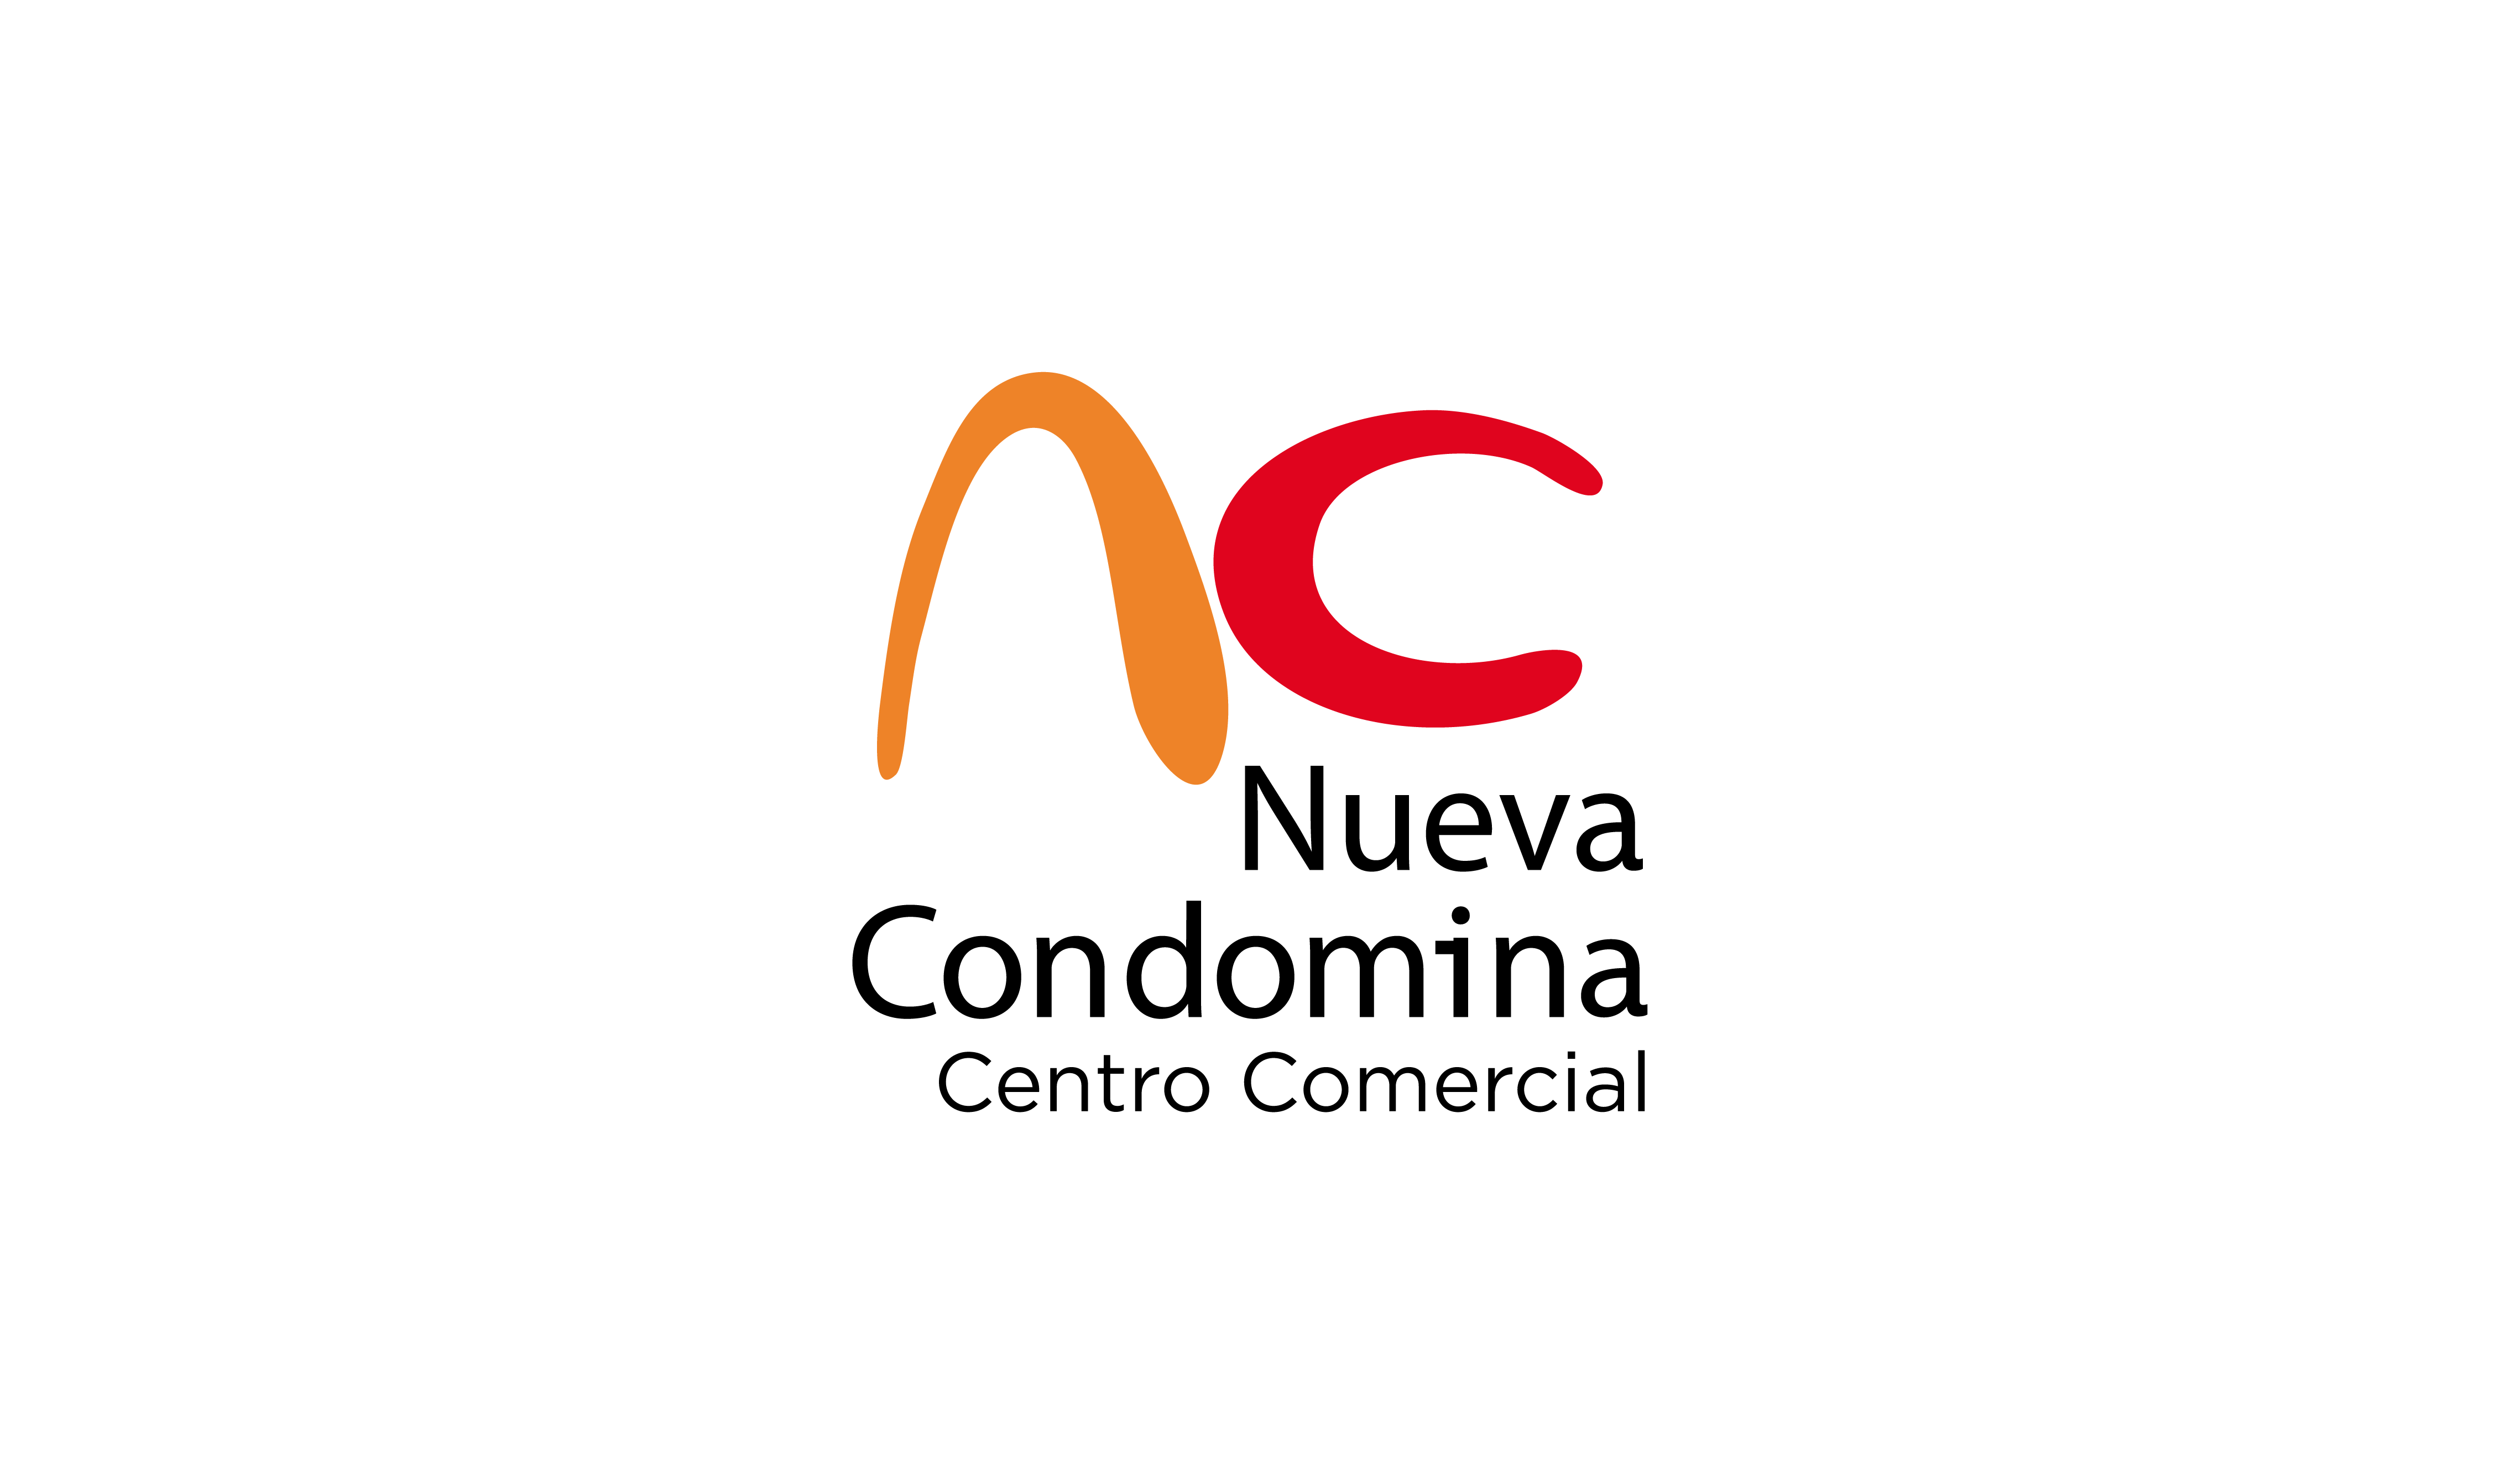 CC Nueva Condomina comunicación publicidad marketing